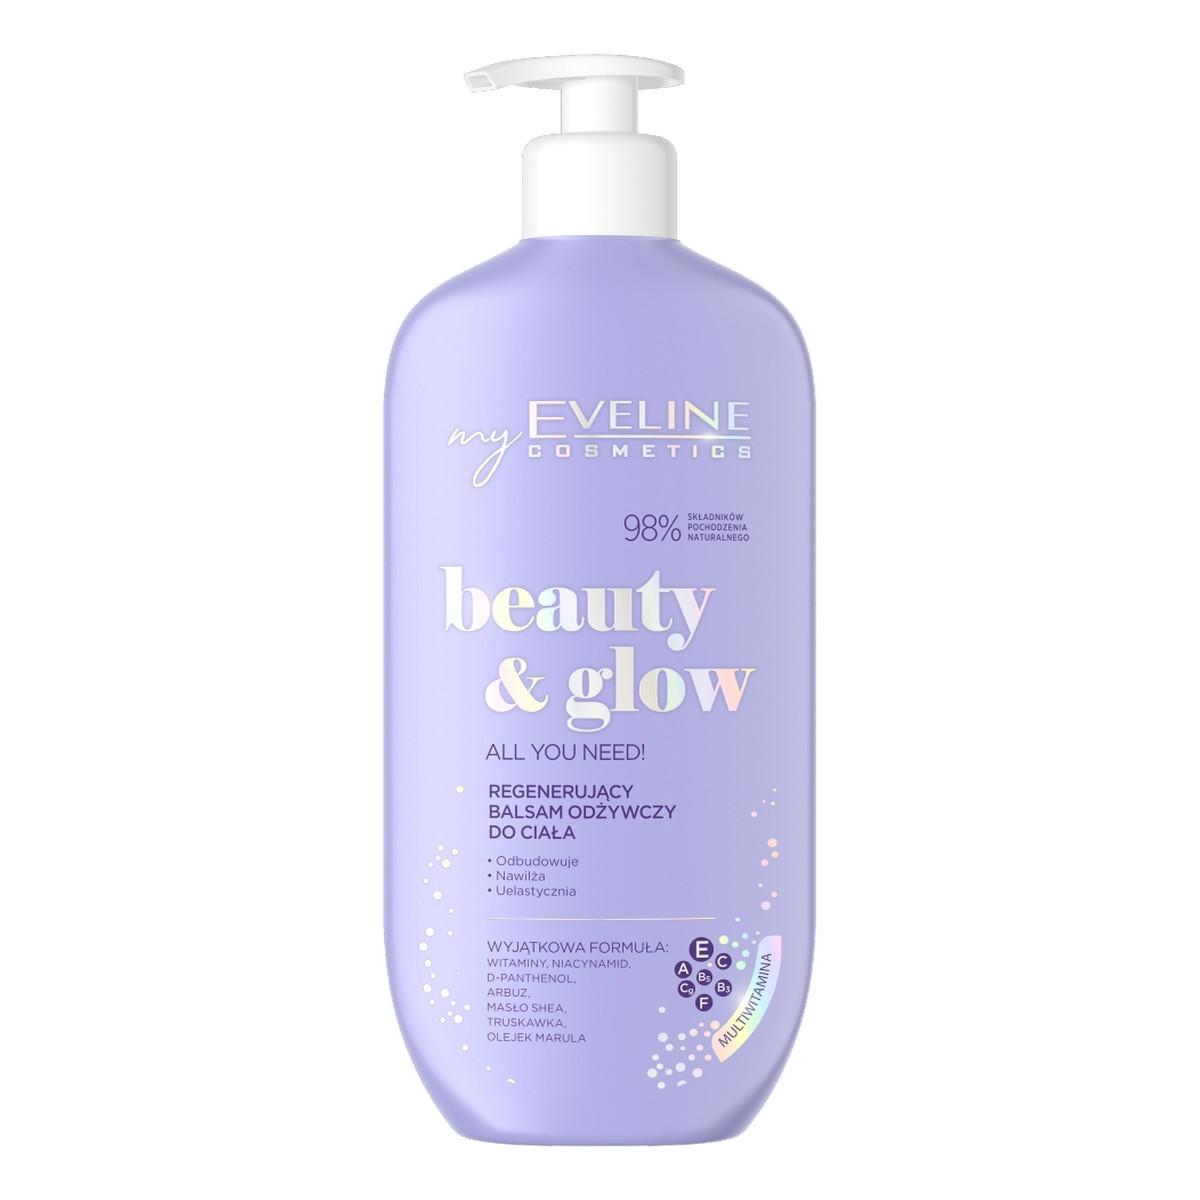 Eveline Beauty&Glow Balsam odżywczy do ciała regenerujący 350ml